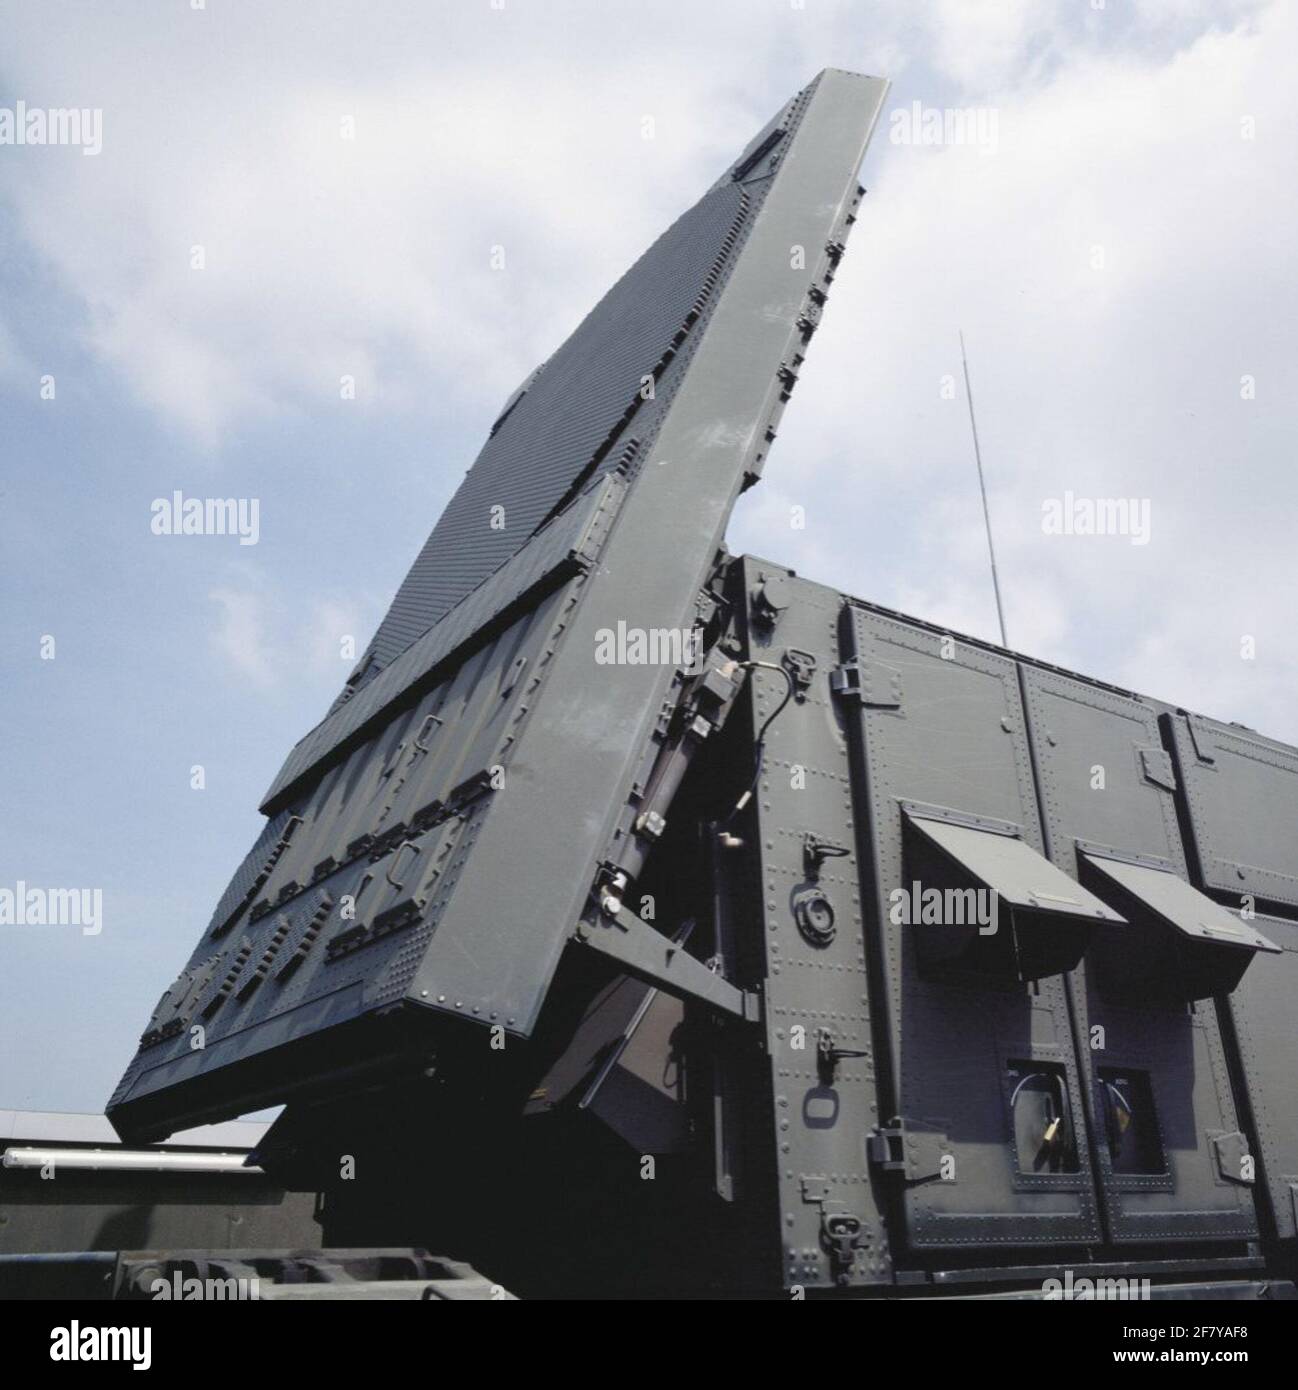 Radargerät (RS). Das Patriot Radar Set bietet düstere Funktionen aller Radargeräte von Nike und Hawk in einem einzigen Gerät: Verfolgen, Identifizieren und Verfolgen von Zielen sowie Lenkraketen. Stockfoto